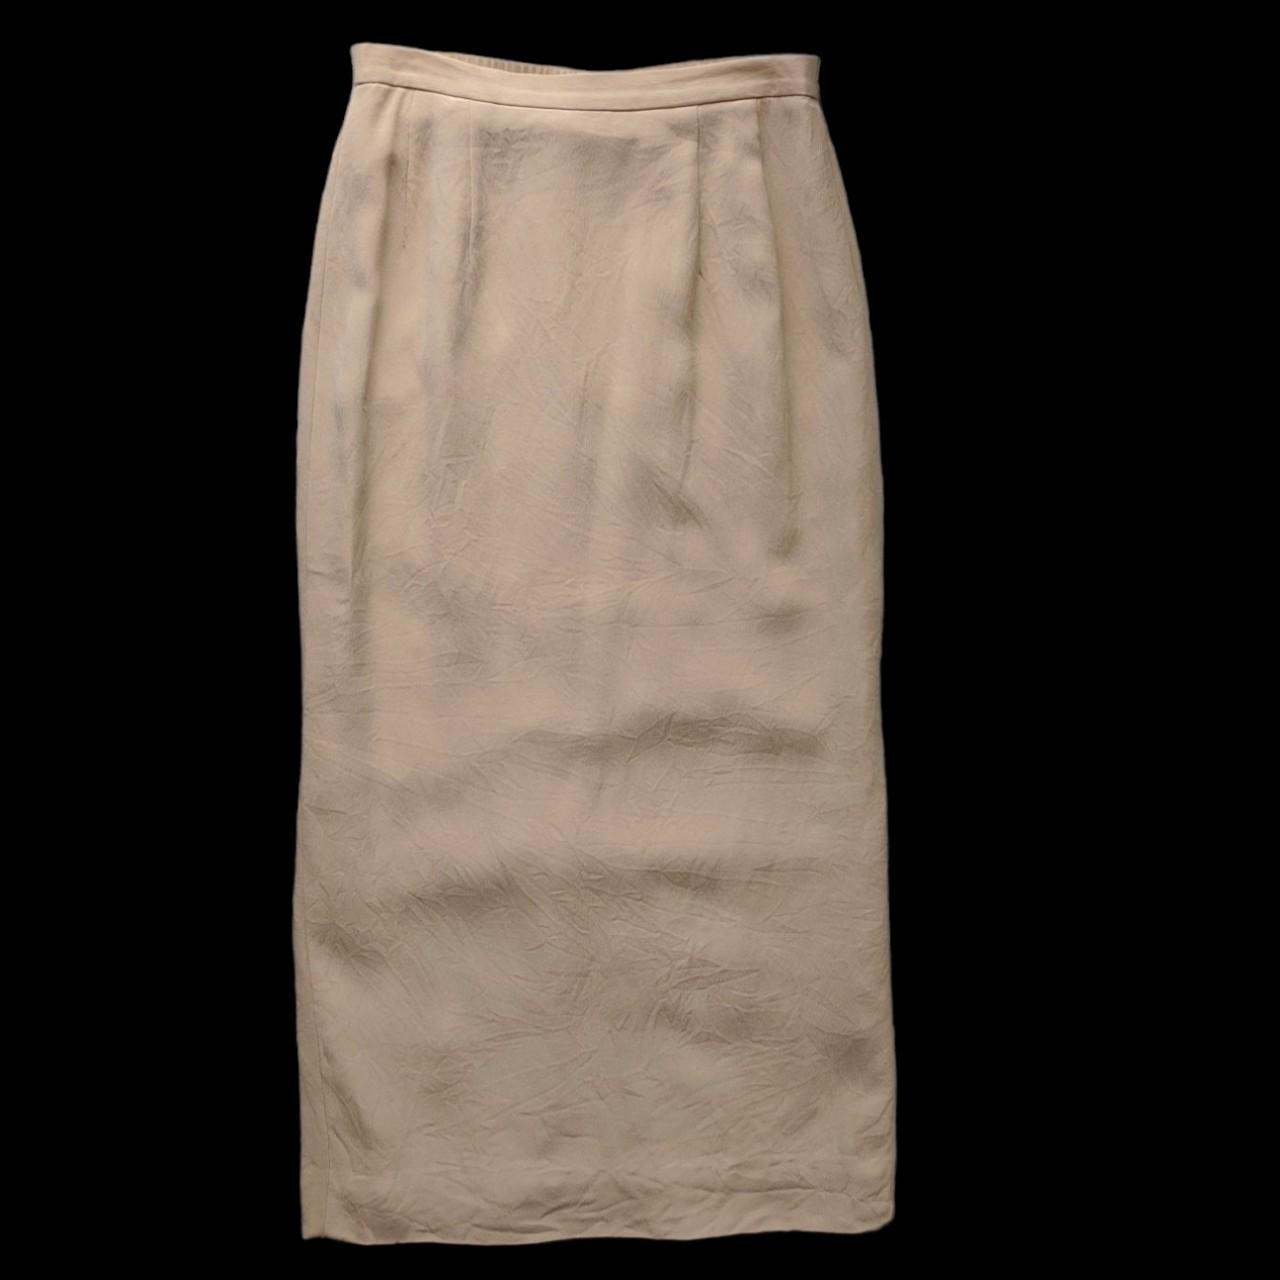 Vintage textured silk pencil skirt. Featuring a... - Depop